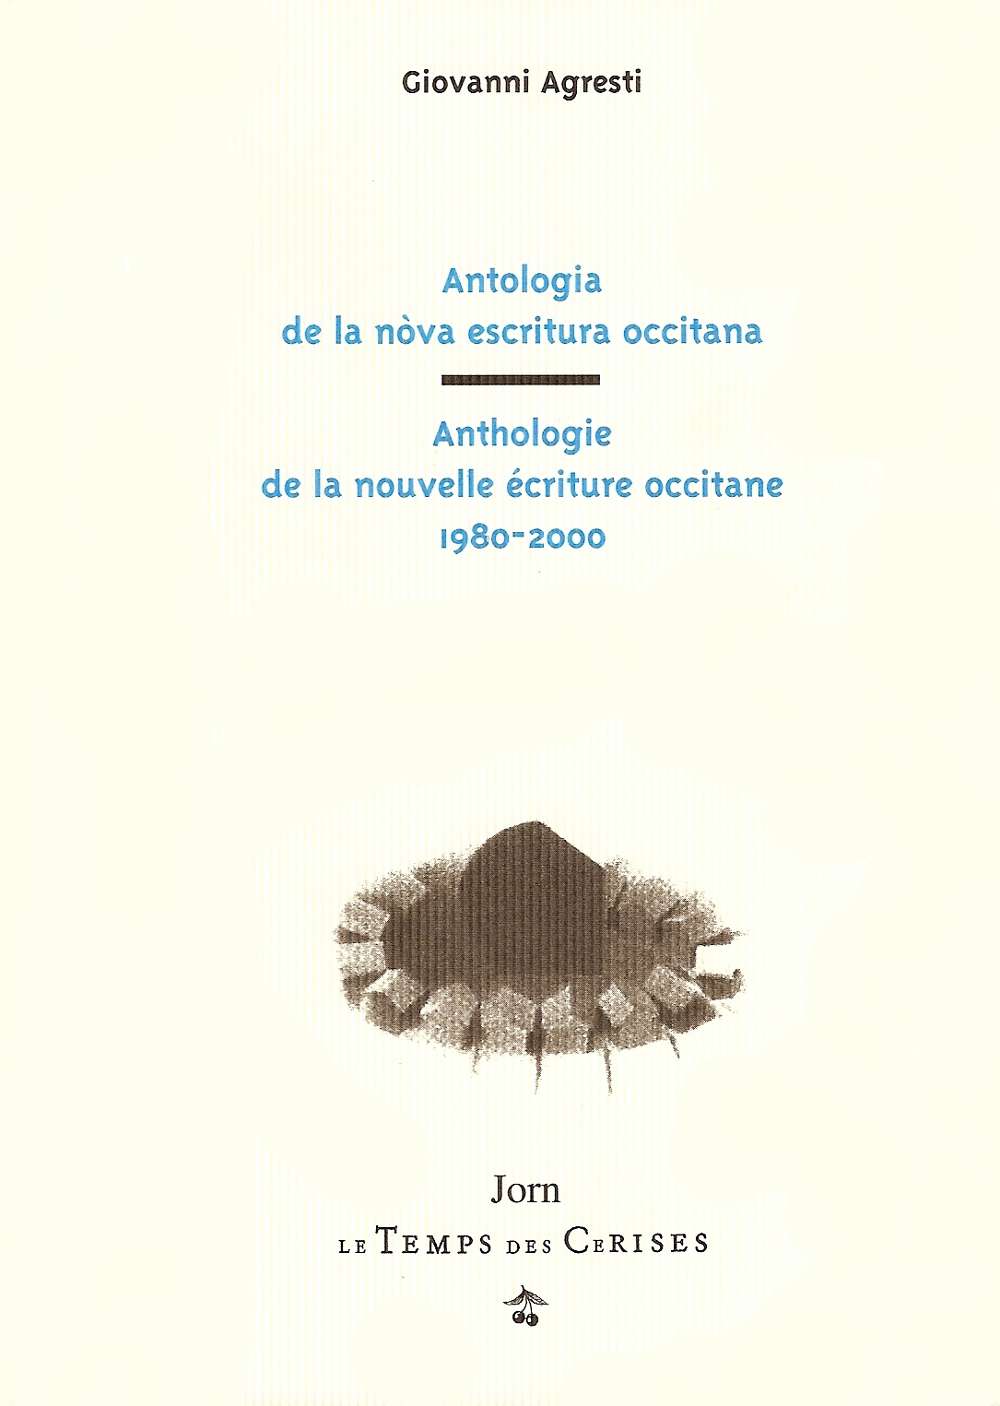 Antologia de la nòva escritura occitana 1980-2000